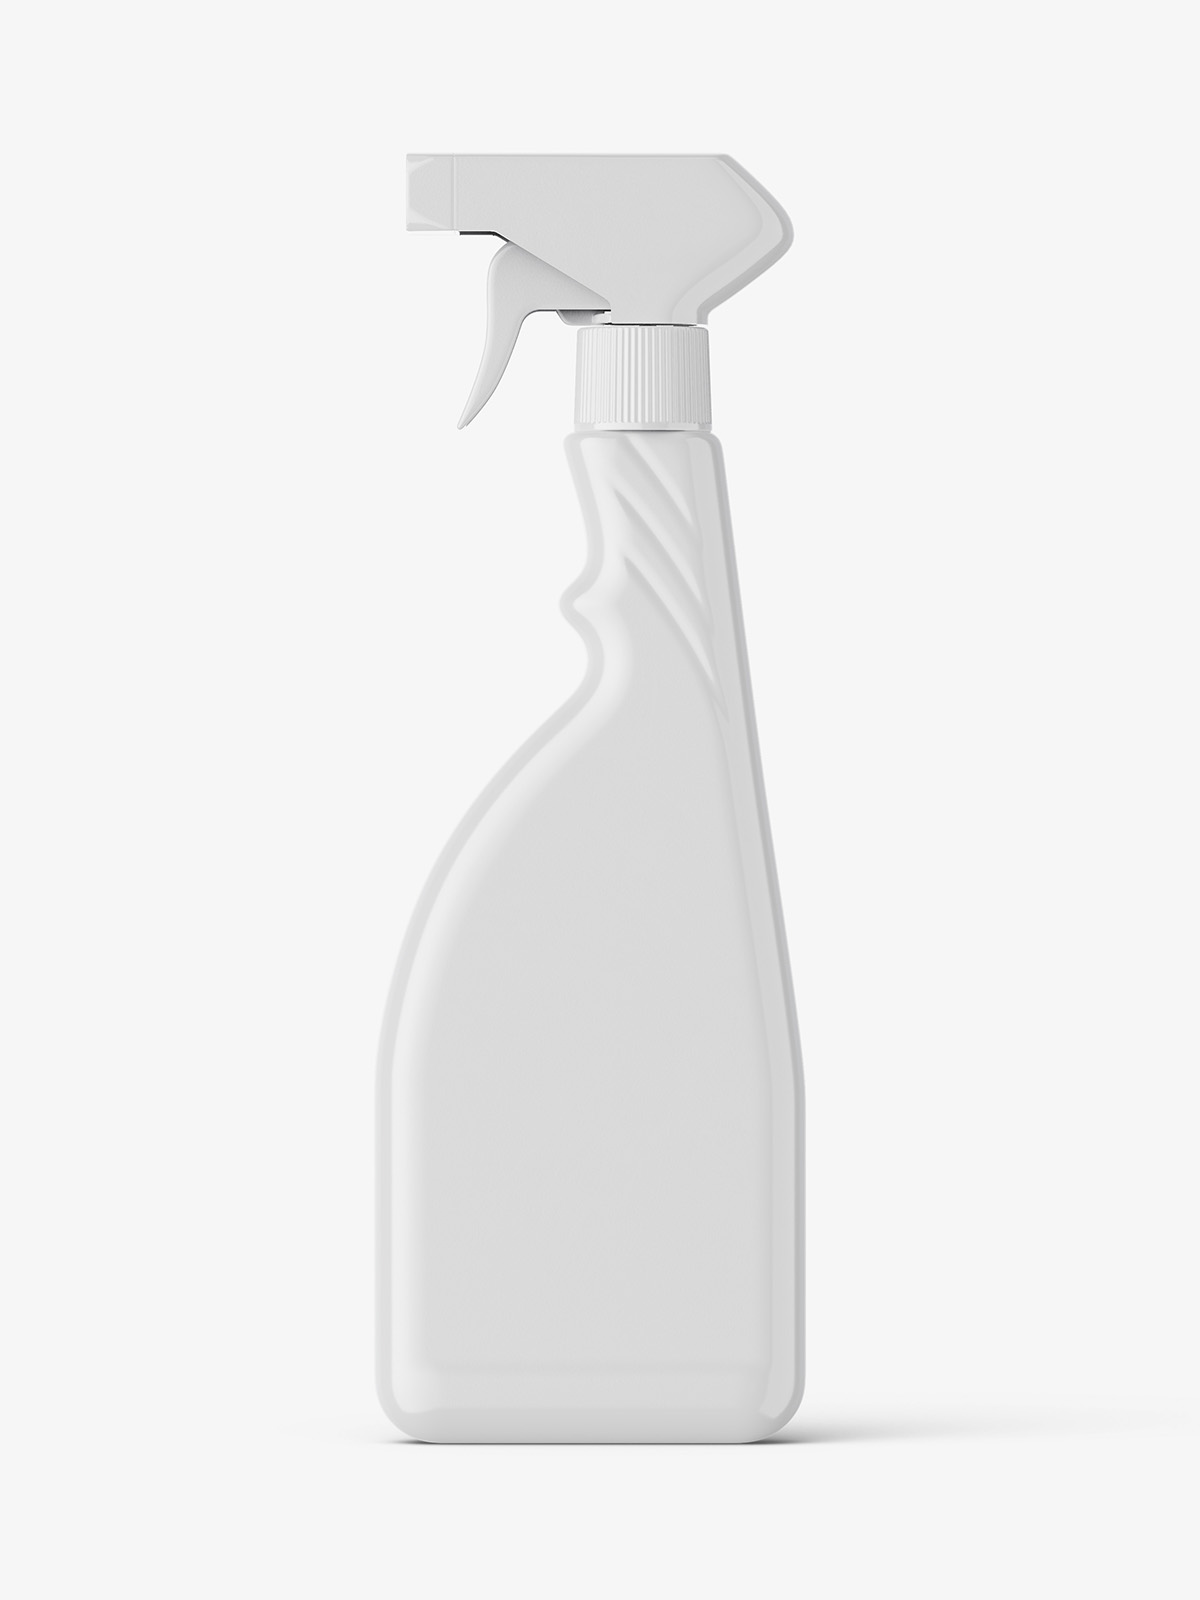 Download Bottle With Trigger Spray Mockup Smarty Mockups